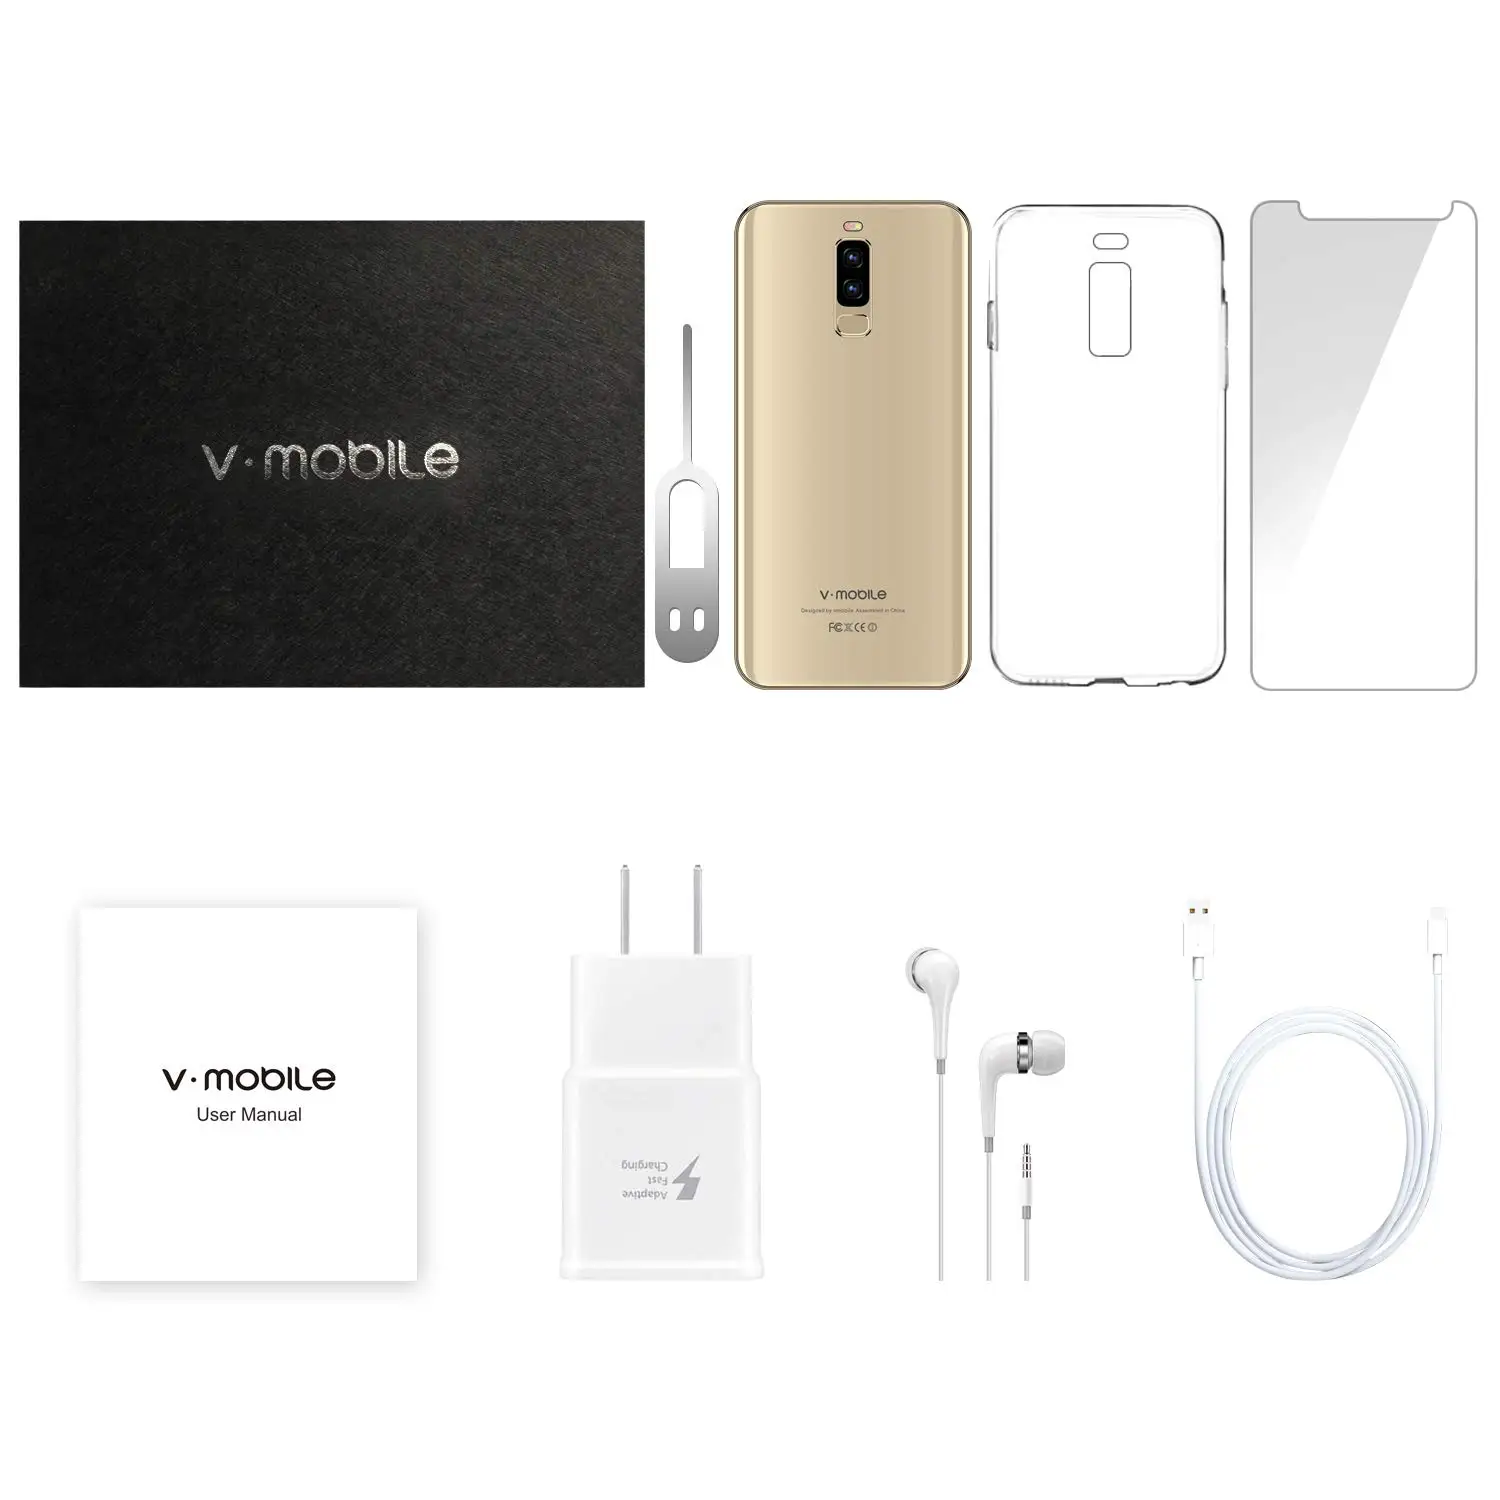 TEENO VMobile S9+ мобильный телефон Android 8,1 5,8" 19:9 полный экран 3 ГБ+ 16 Гб 13MP камера 4G мобильный телефон разблокированный